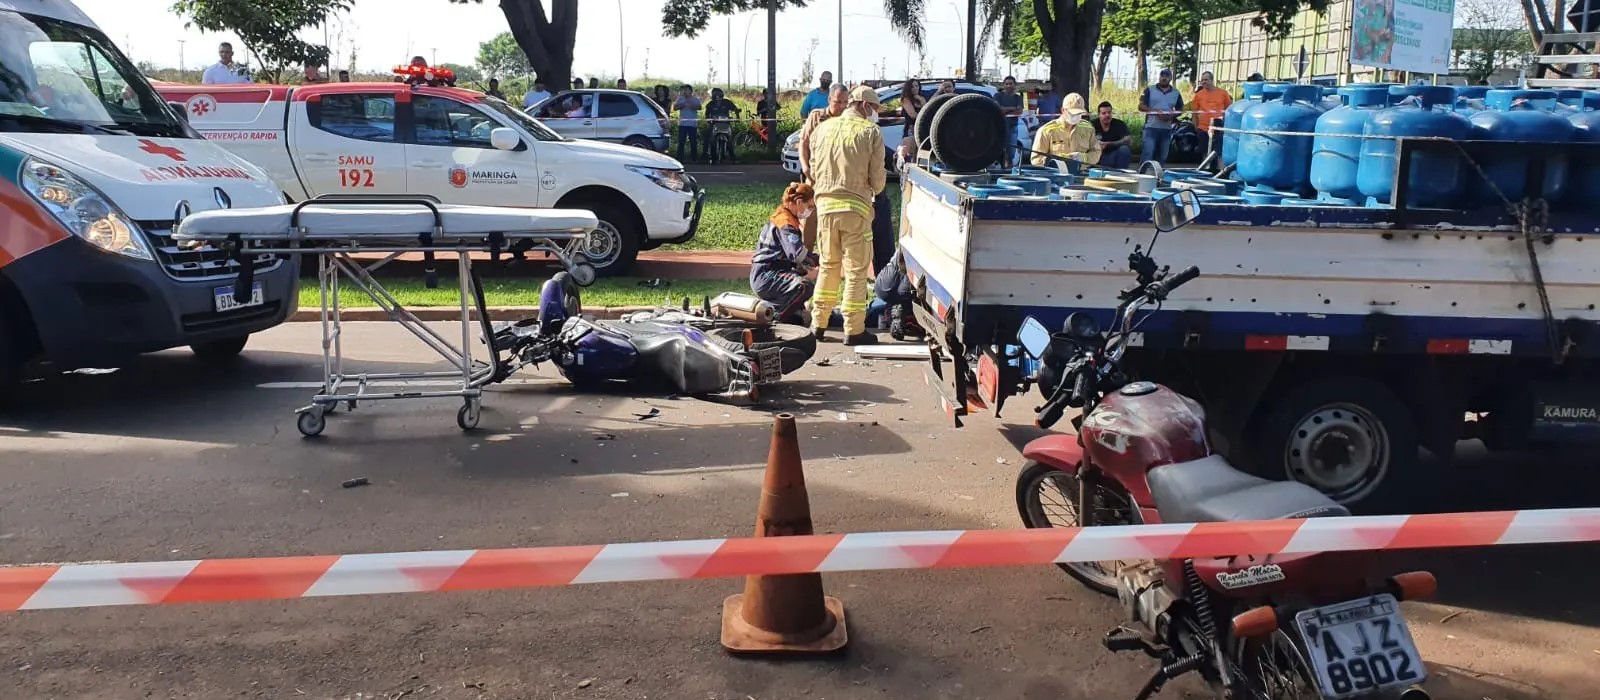 Policial morre em acidente de moto na Avenida Gastão Vidigal